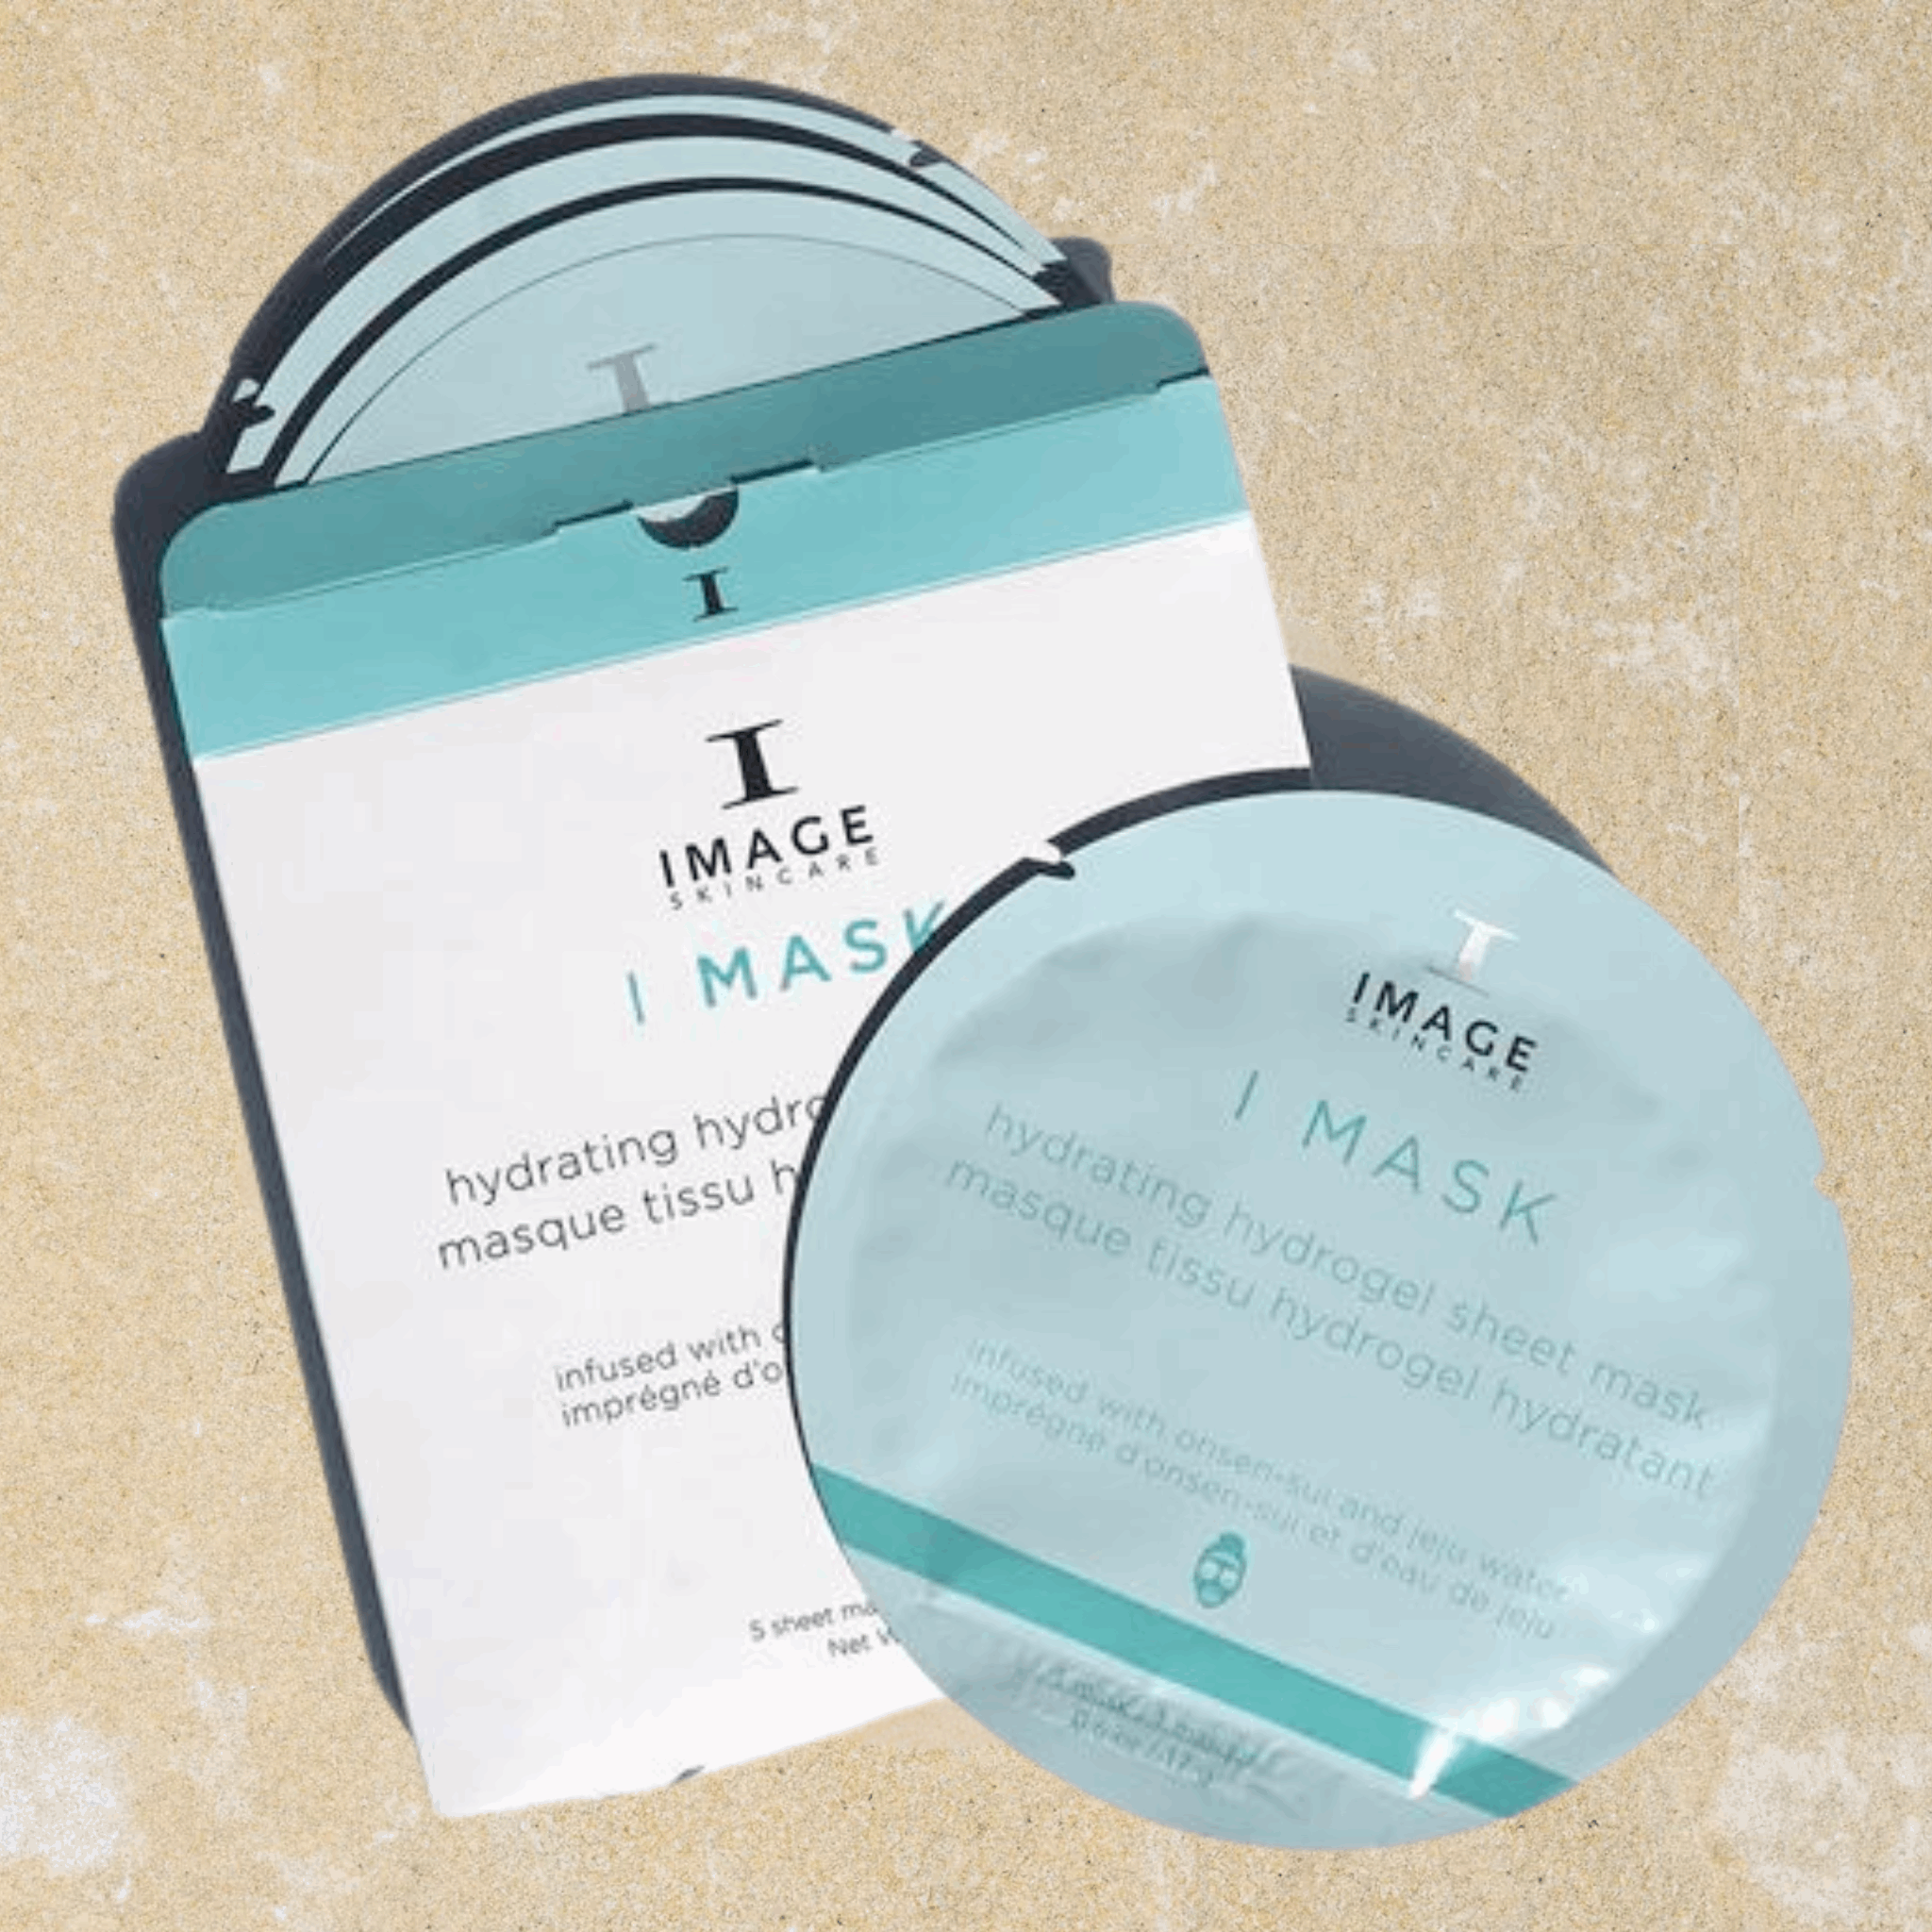 I MASK Hydrating Hydrogel Sheet Mask Image Skincare